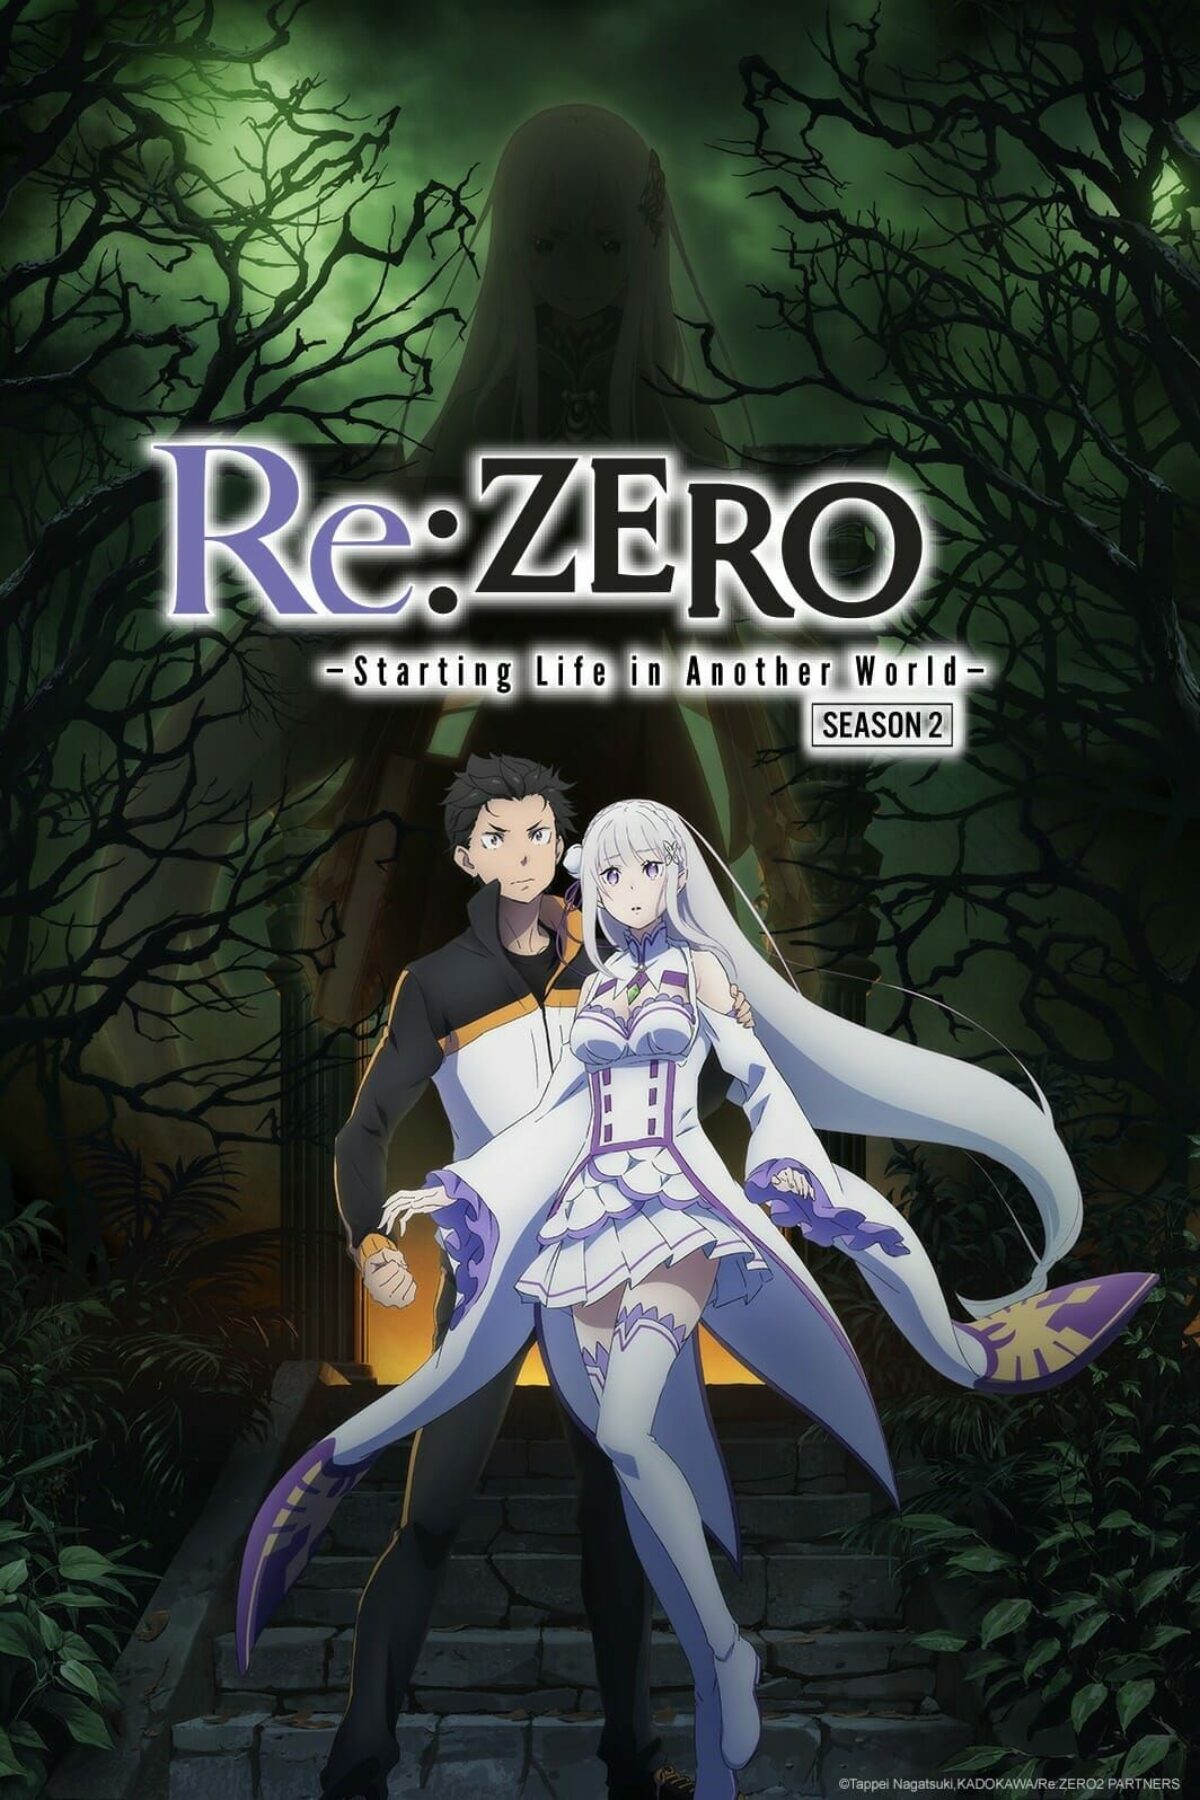 Re Zero Season 2 Episode 12 Release Date Summary Thenationroar